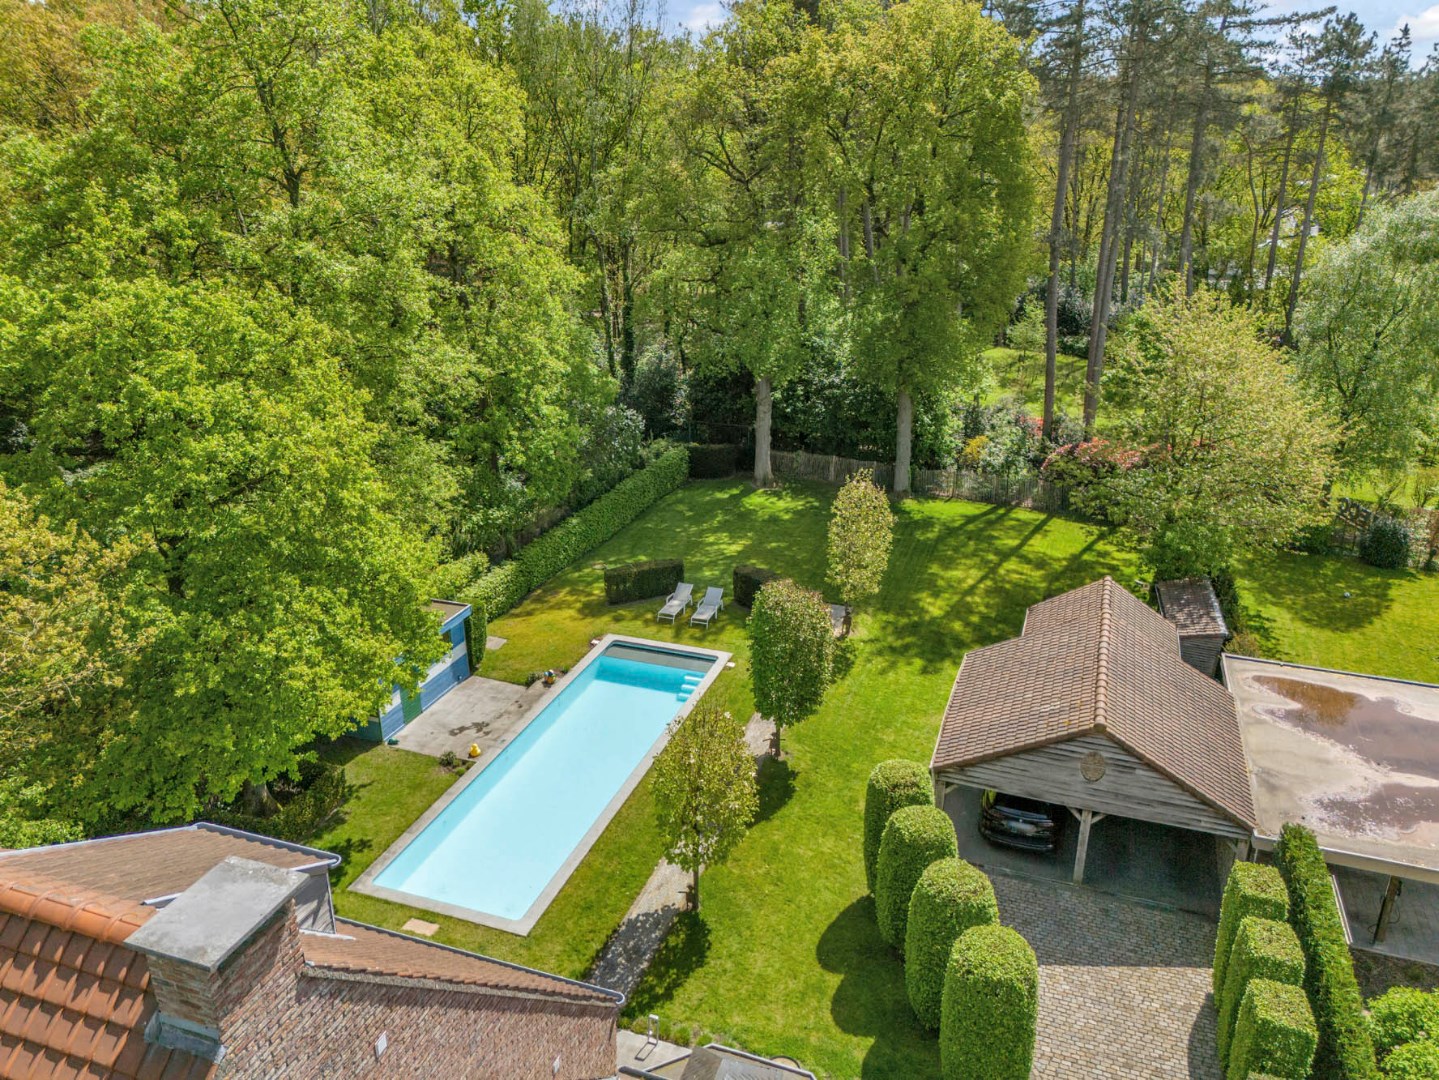 Villa met zwembad en stijlvolle tuin, dubbele carport en 5 slaapkamers in Genk, Gelieren.  EPC-energielabel B, zuidelijke tuinoriëntatie, 5 slaapkamers, 3 badka foto 6